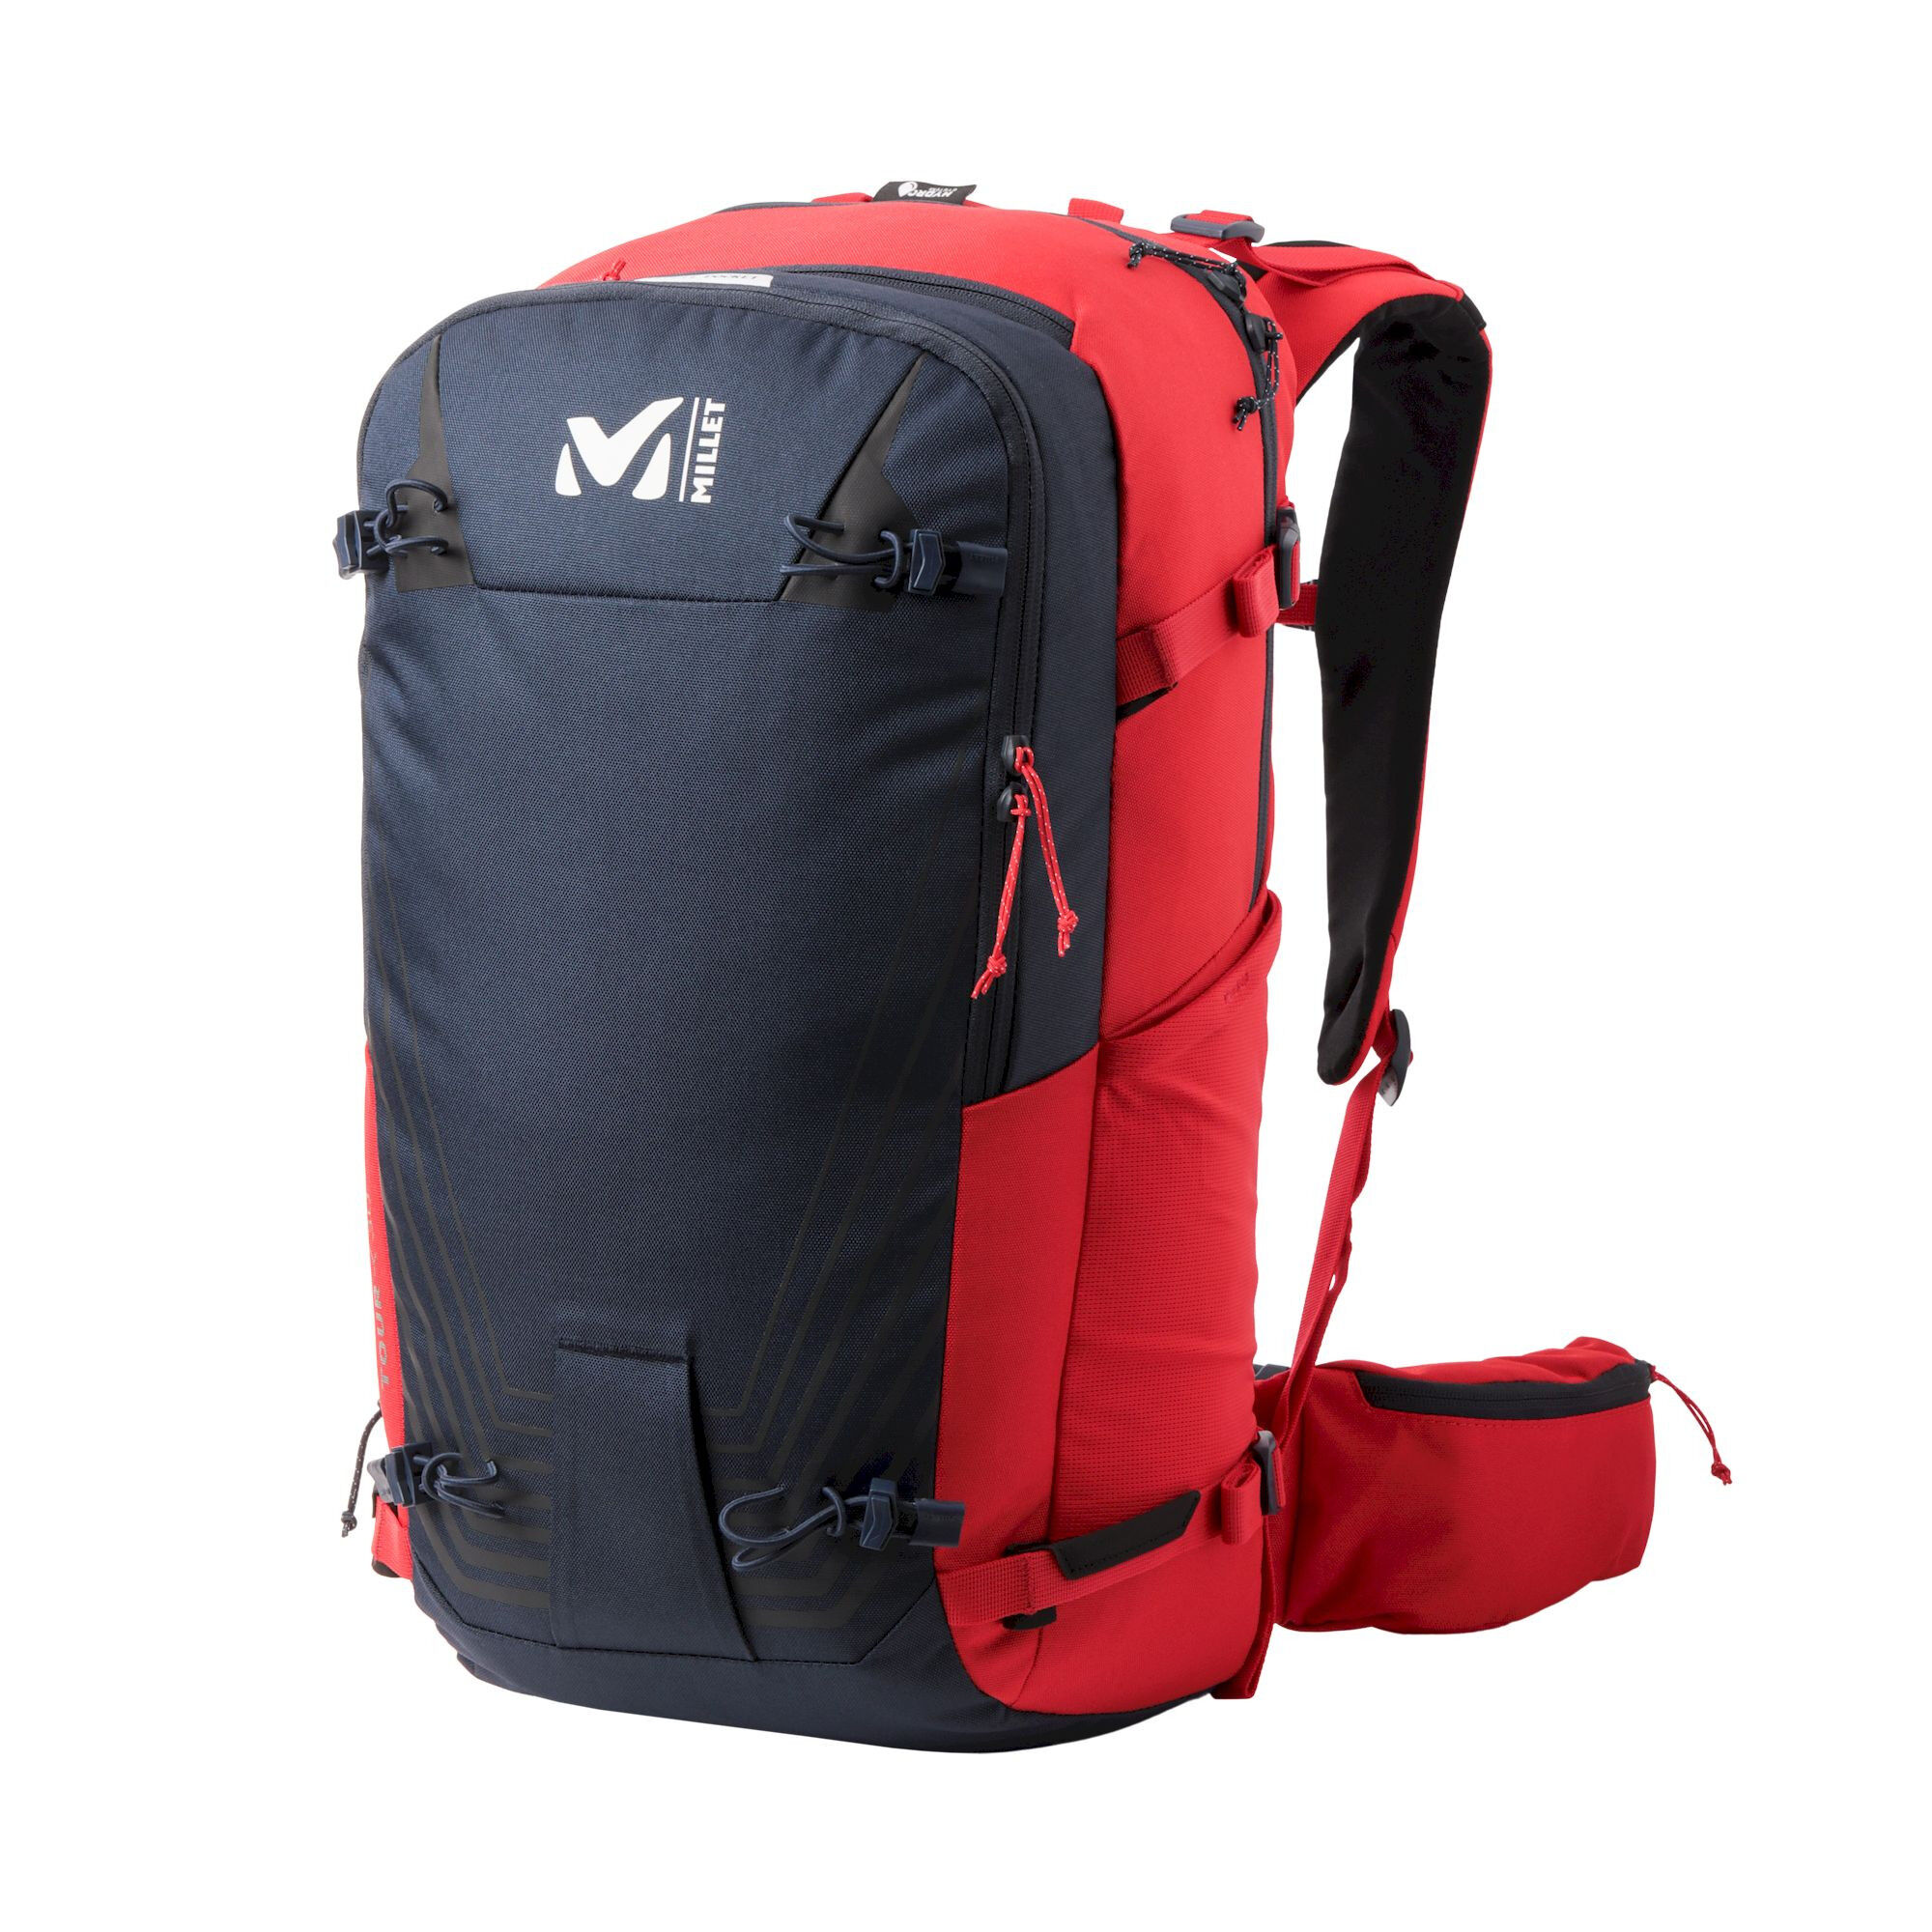 Millet Neo 20, sac à dos 20 litres ski et ski de randonnée.